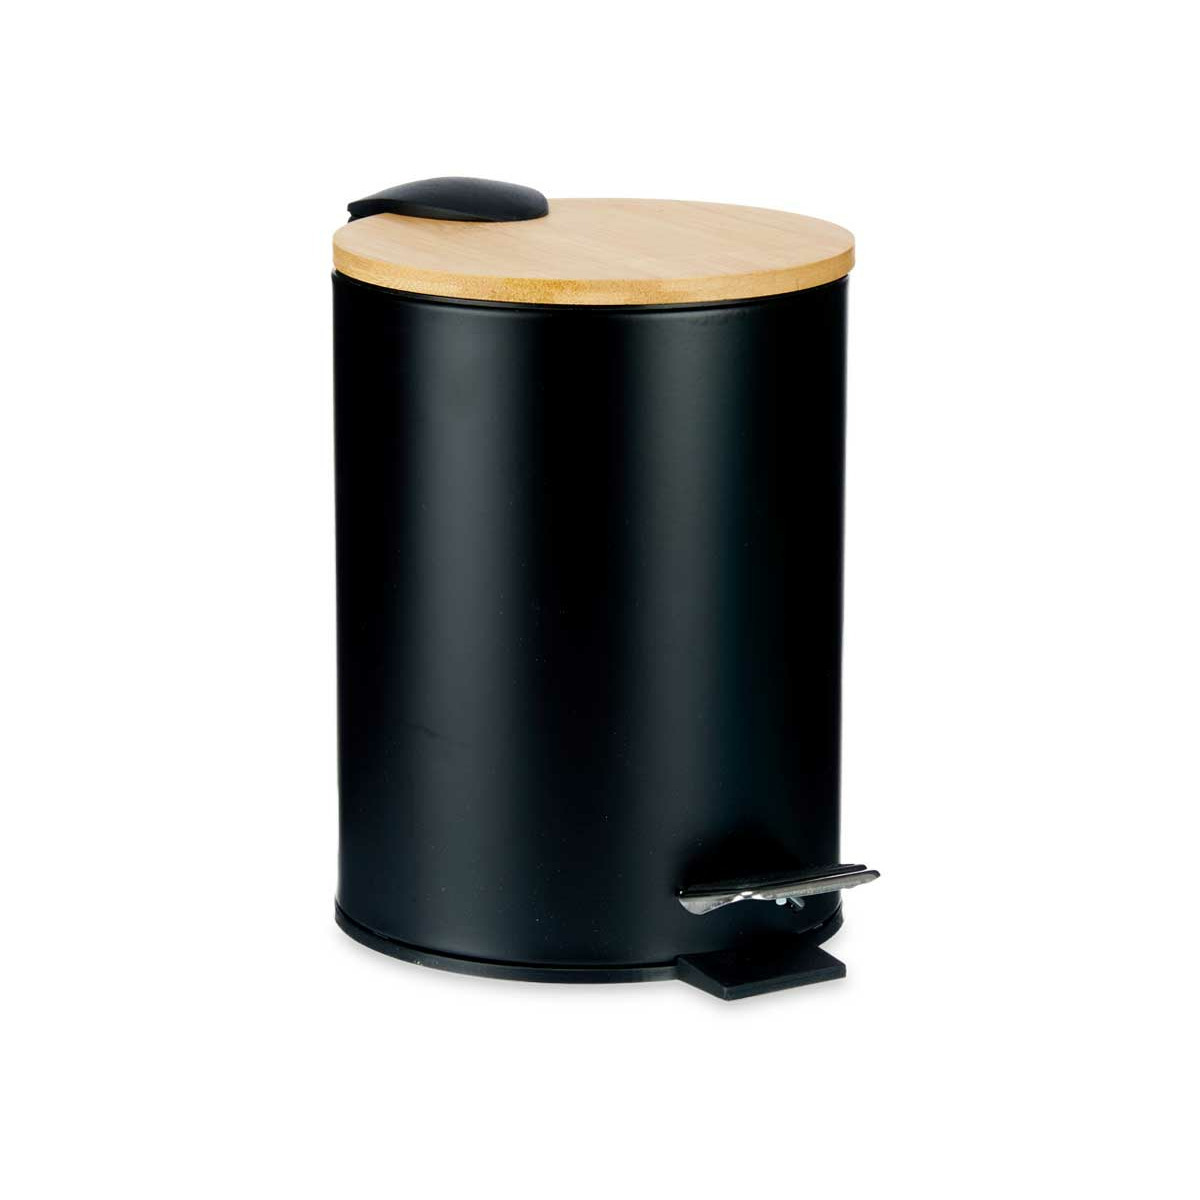 Prullenbak-pedaalemmer zwart 3 liter metaal-bamboe 17 x 23,5 cm